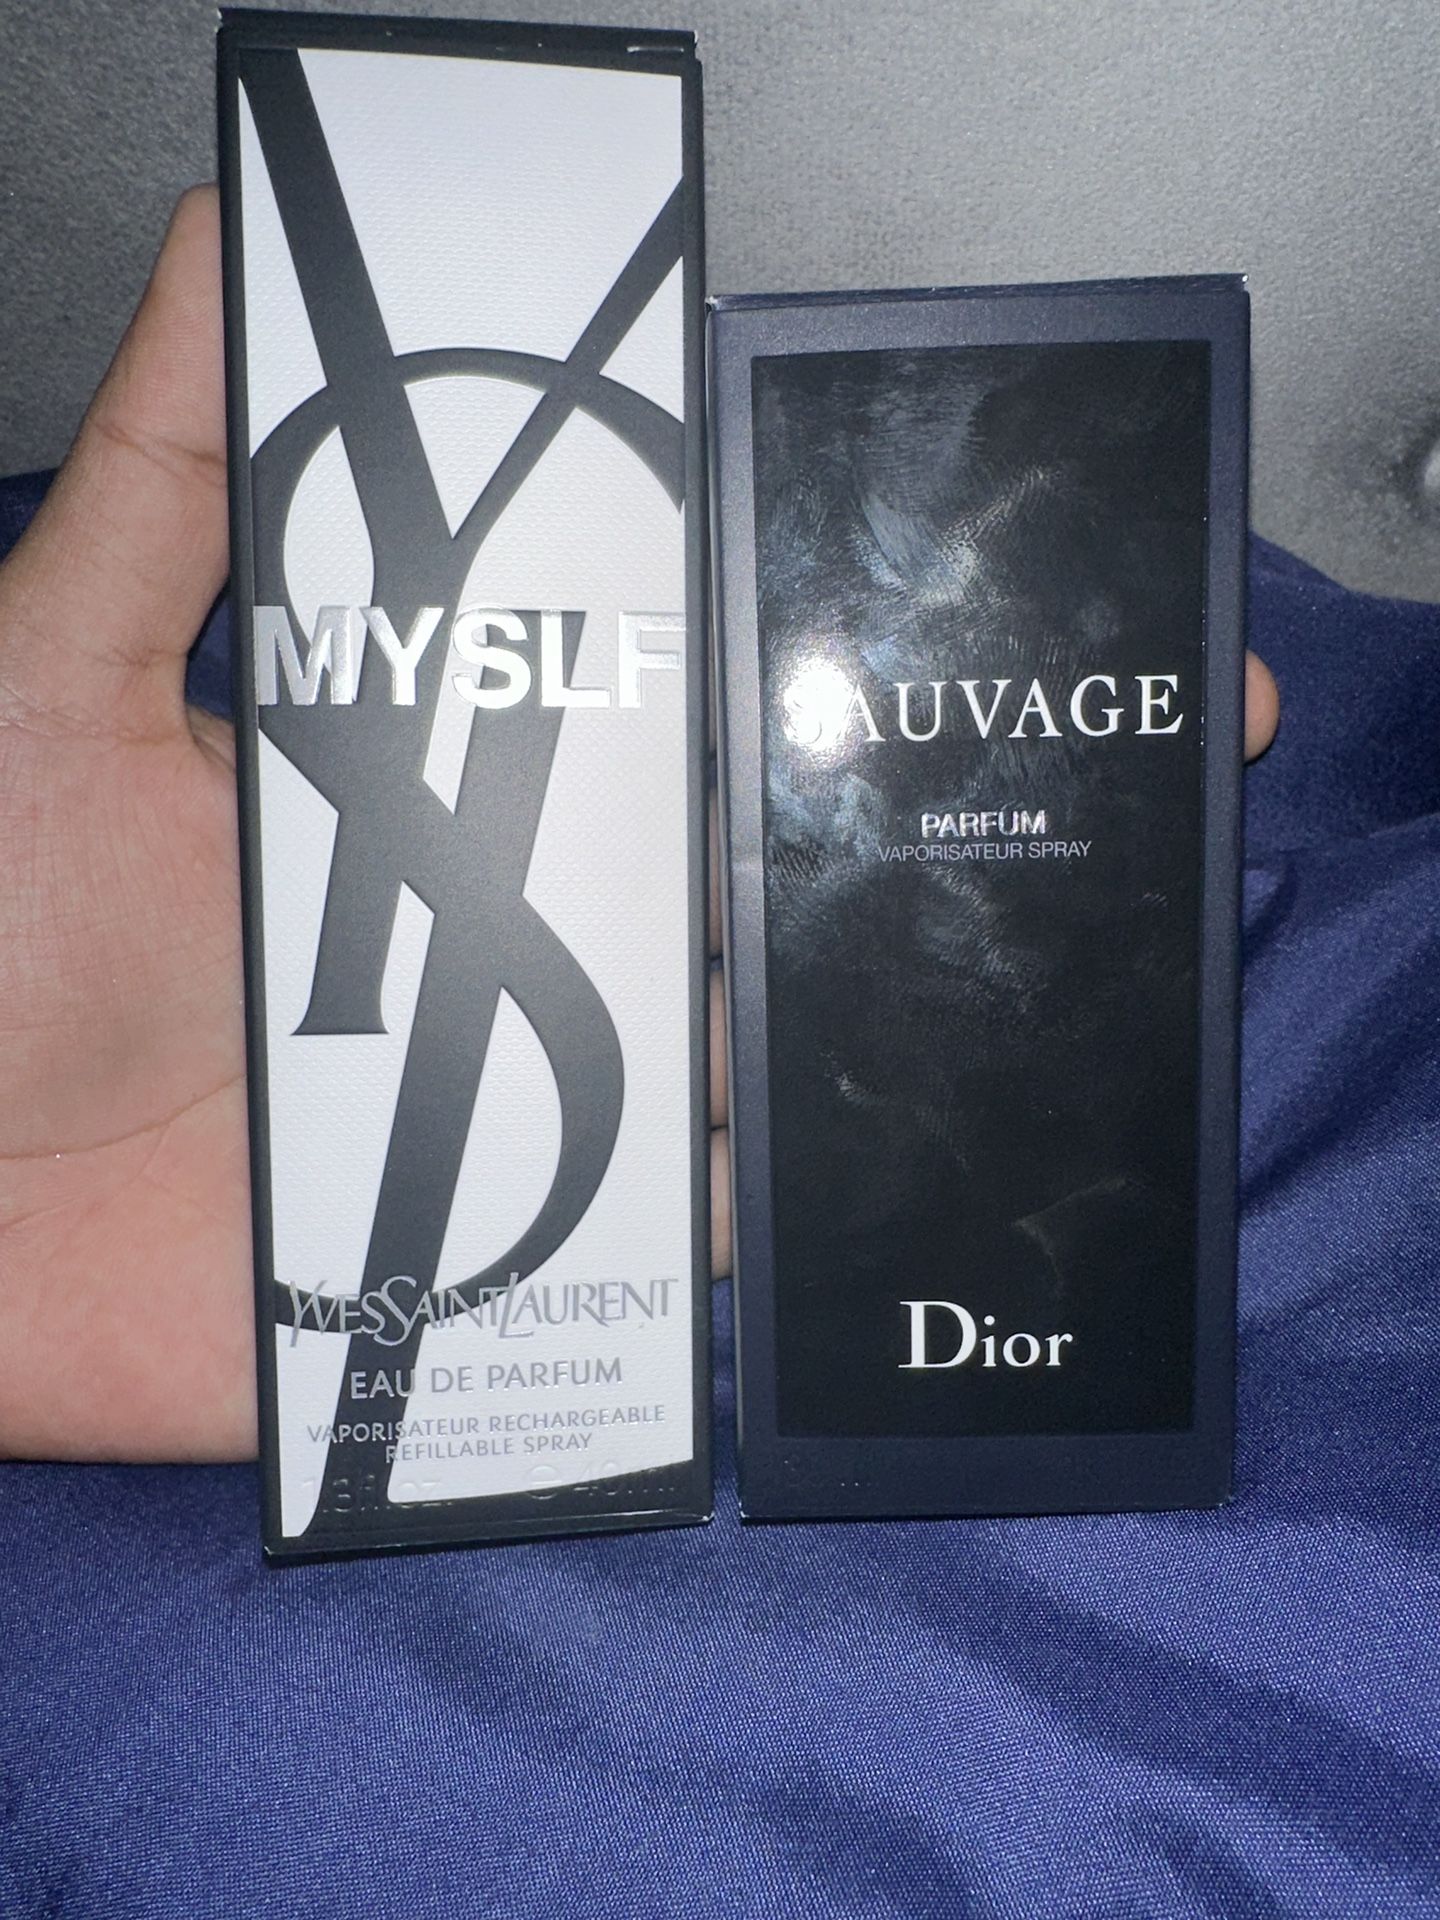 Suavage Dior Cologne